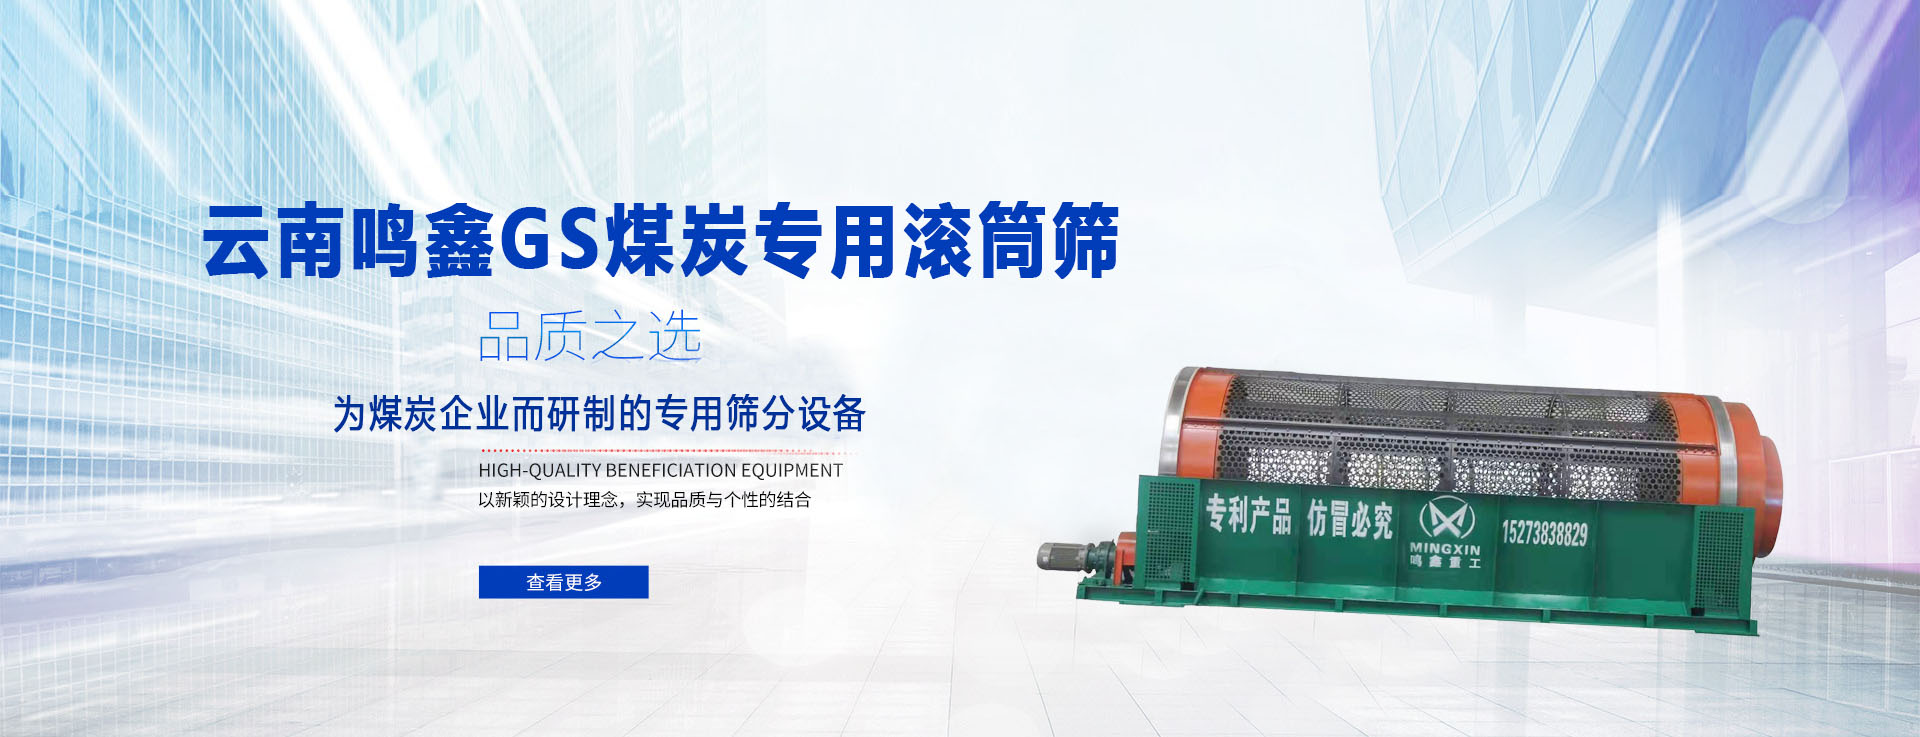 易倍体育(中国)集团有限公司GS煤炭专用滚筒筛